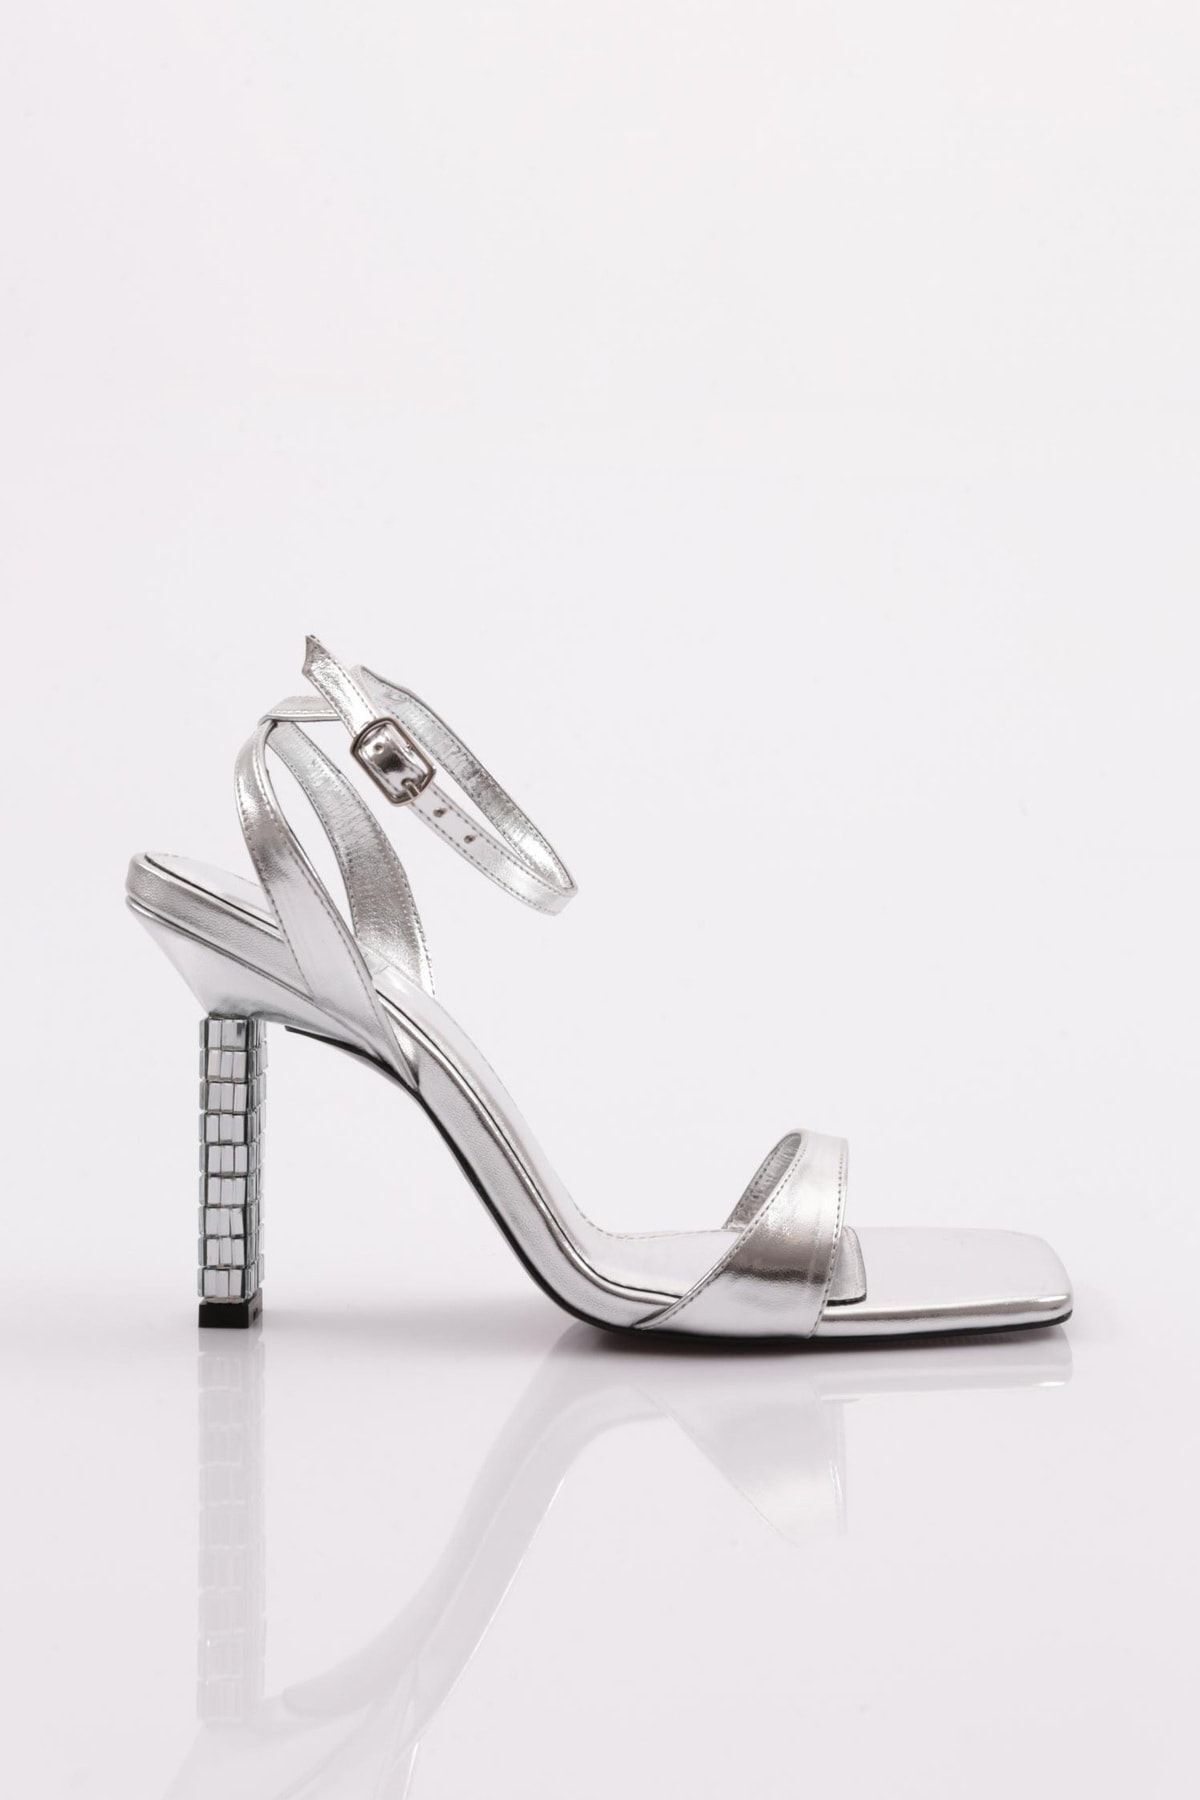 Dgn 9011 Kadın Bilekten Bağlama Tek Şerit Topuklu Ayakkabı Gümüş Metalik